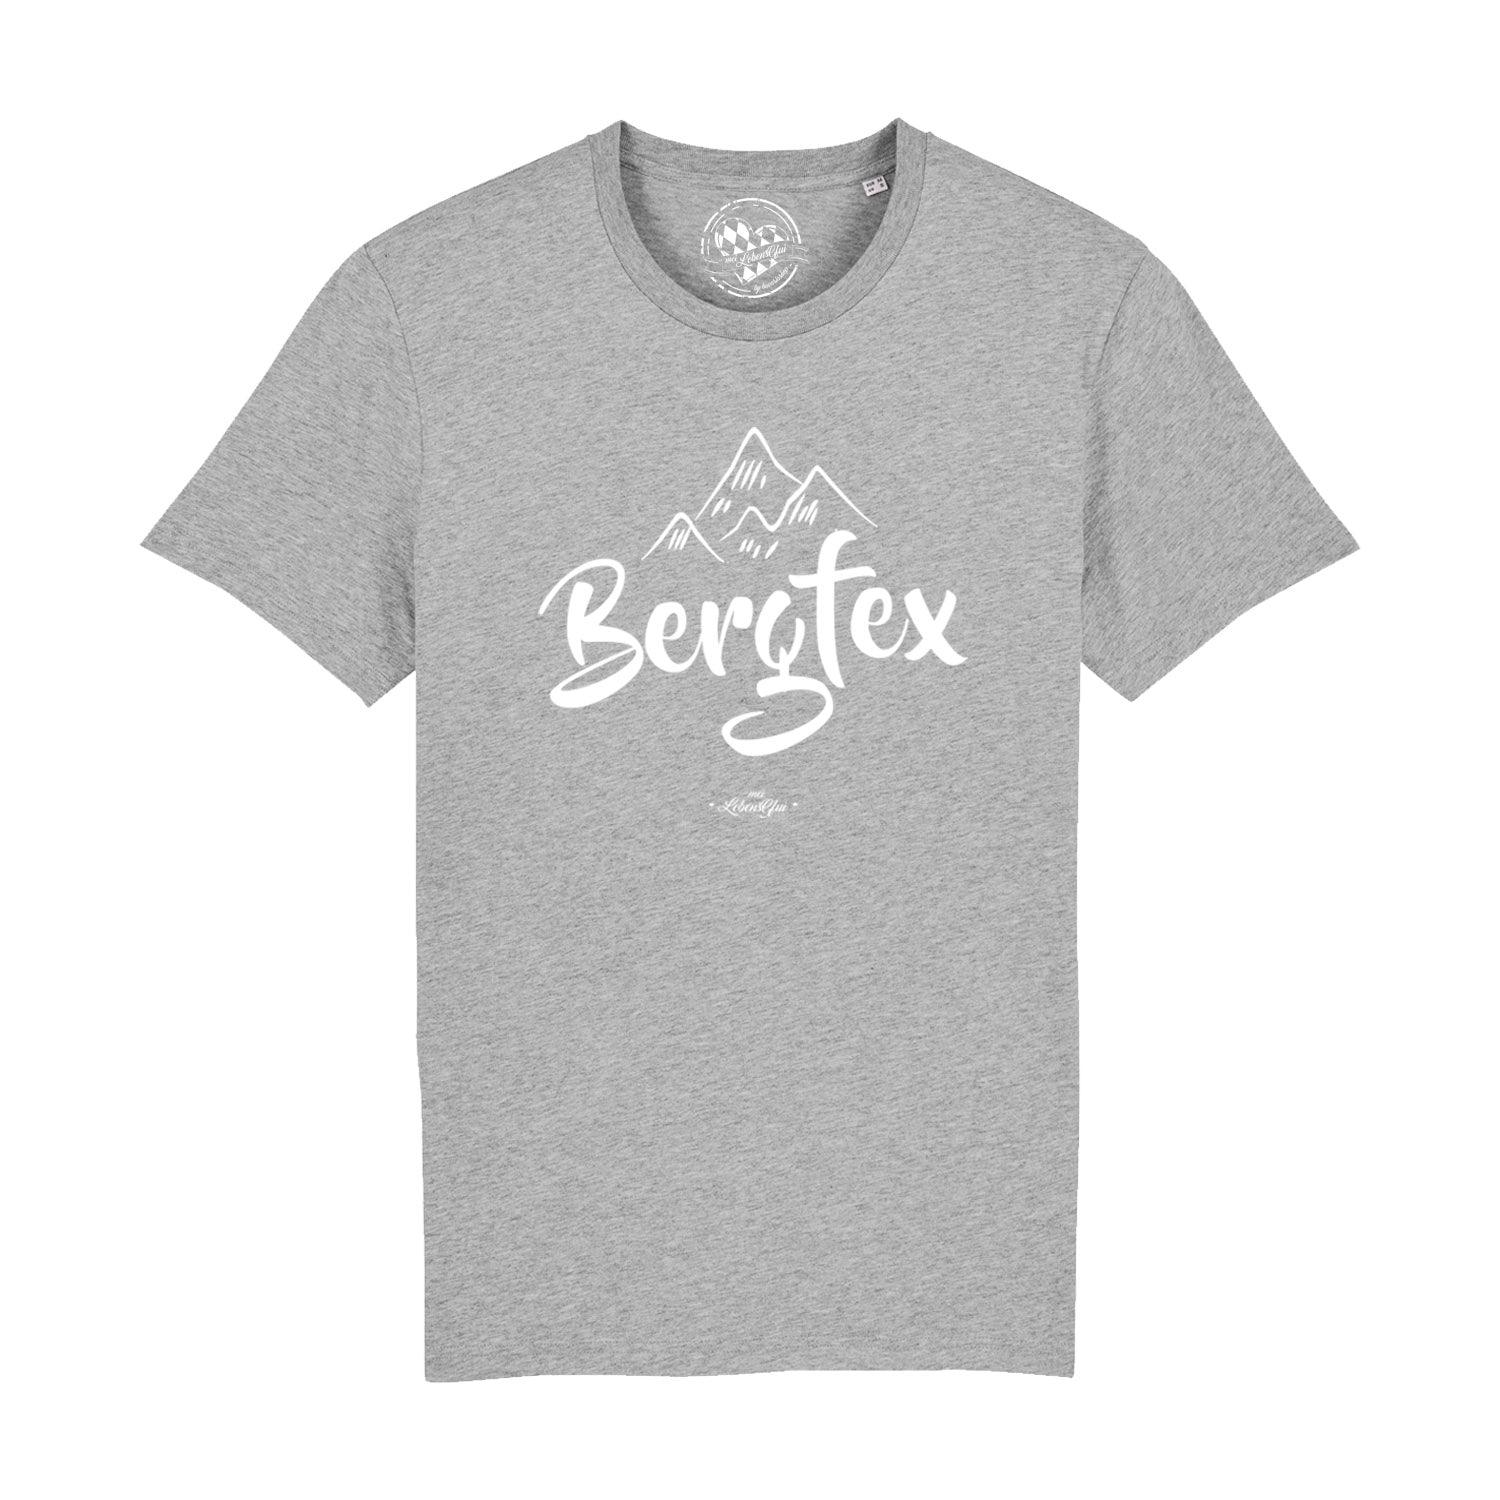 Herren T-Shirt "Bergfex" - bavariashop - mei LebensGfui